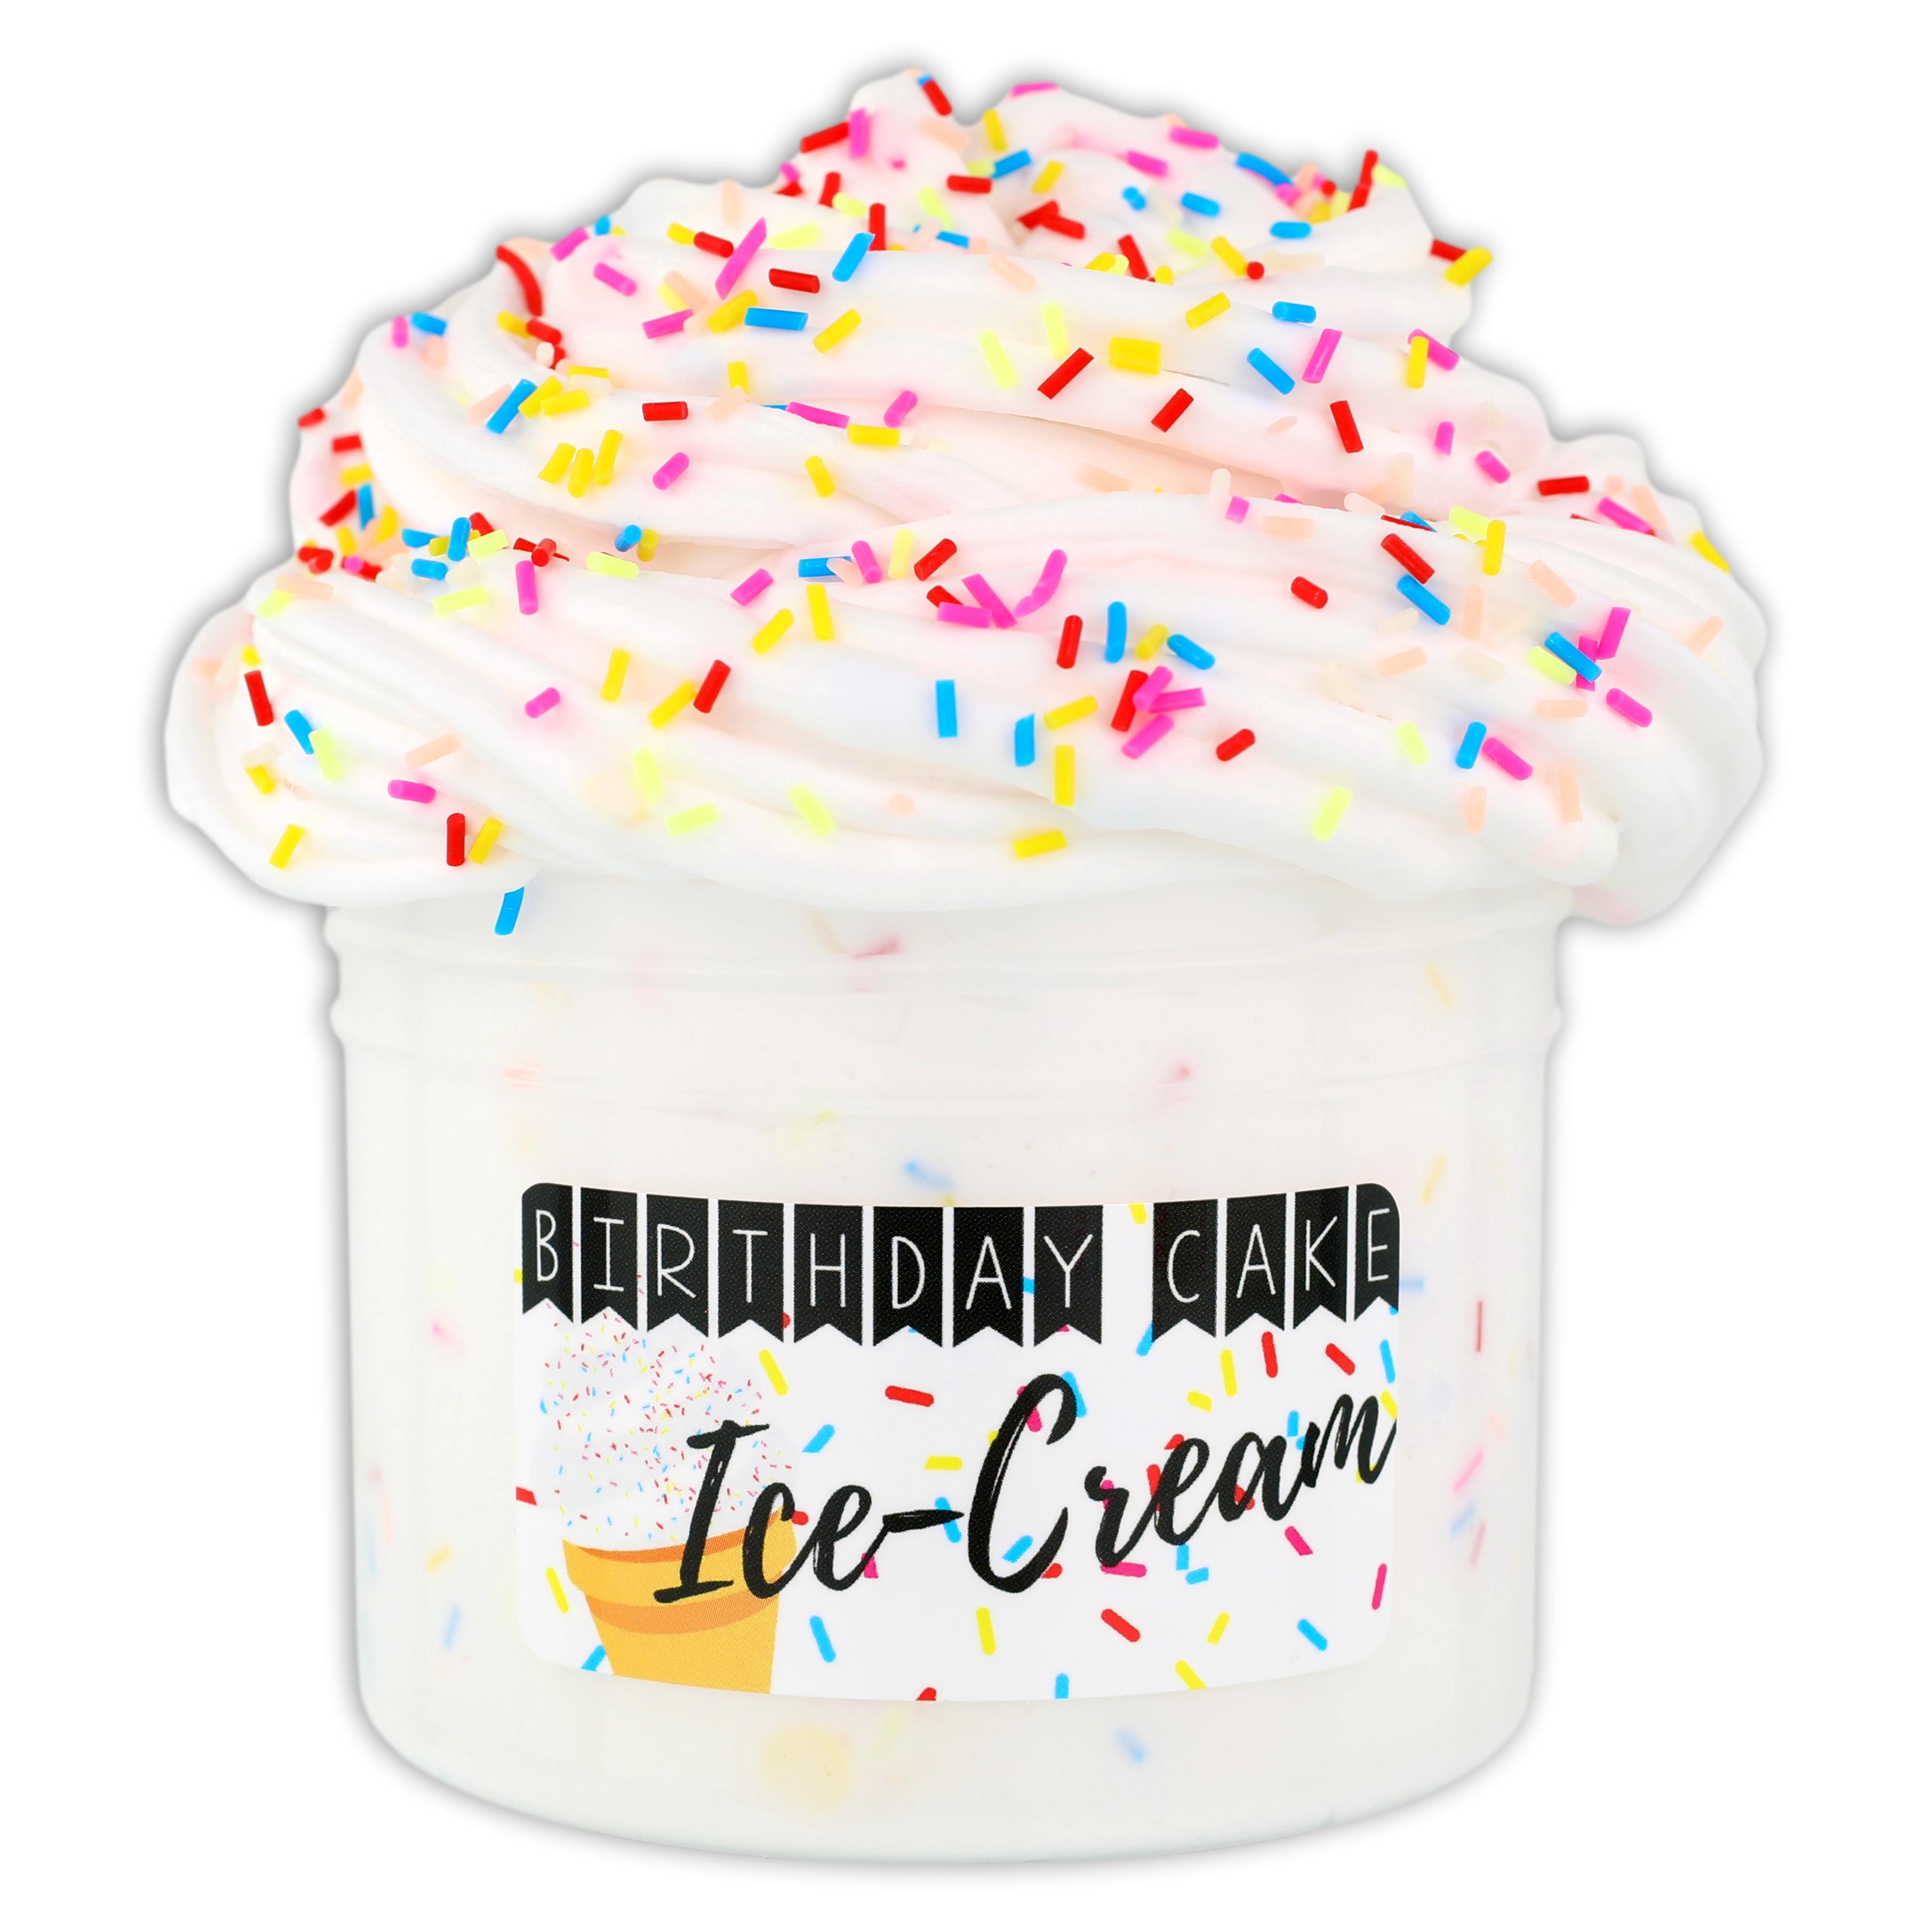 Birthday Cake Ice-Cream - Wholesale Case